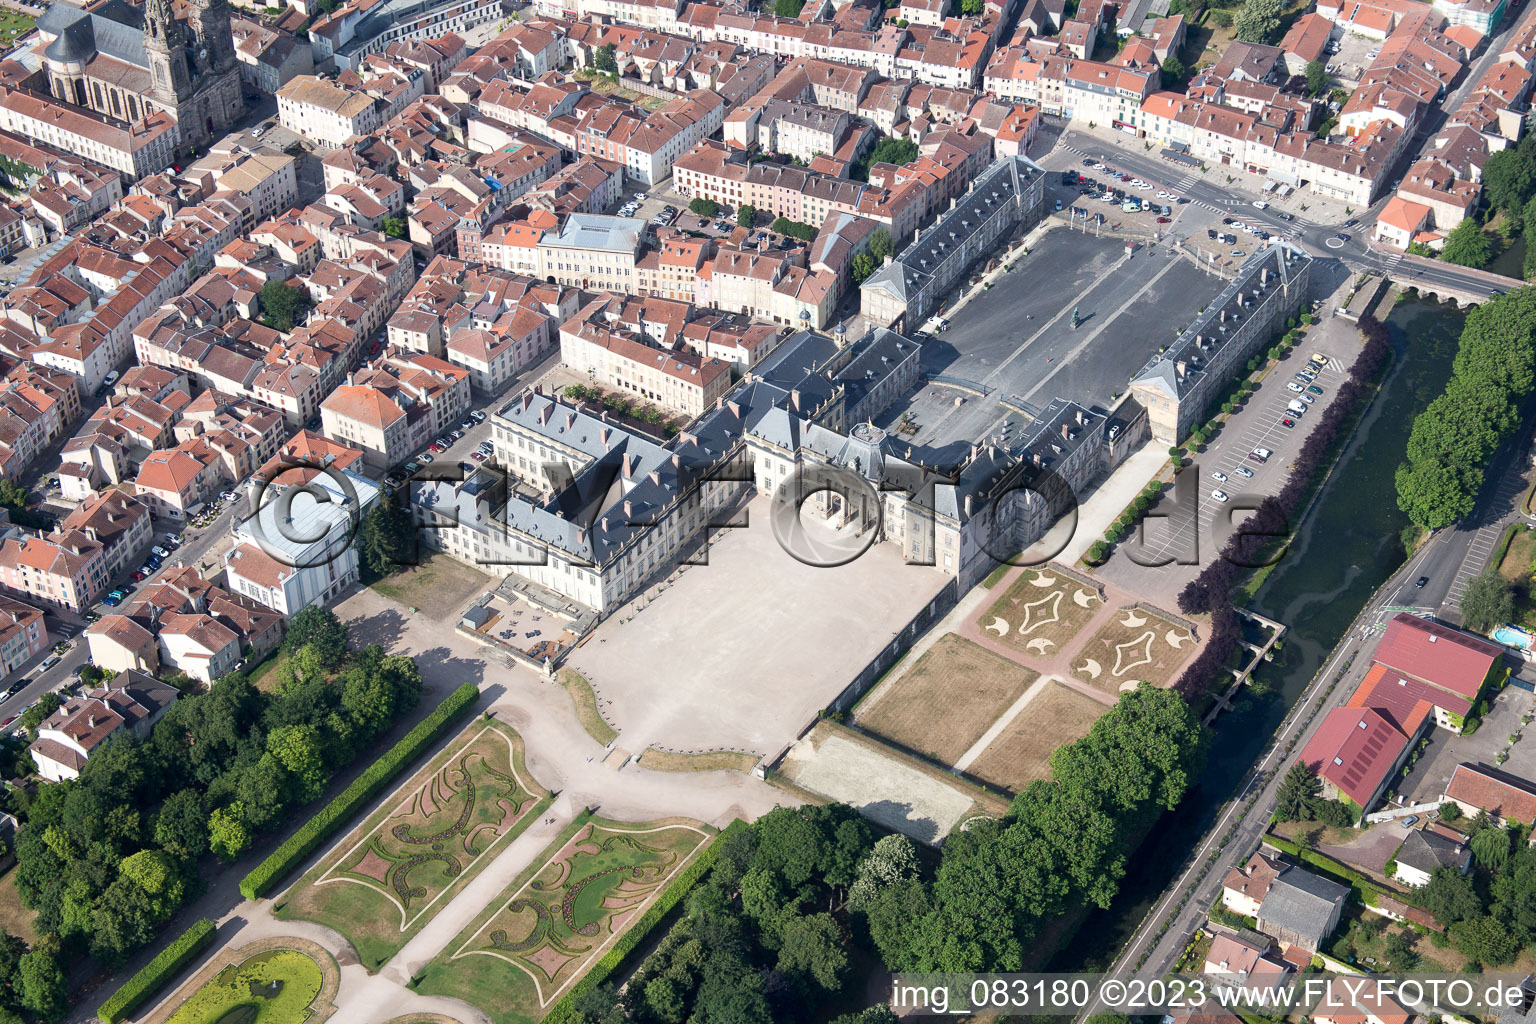 Lunéville im Bundesland Meurthe-et-Moselle, Frankreich aus der Luft betrachtet